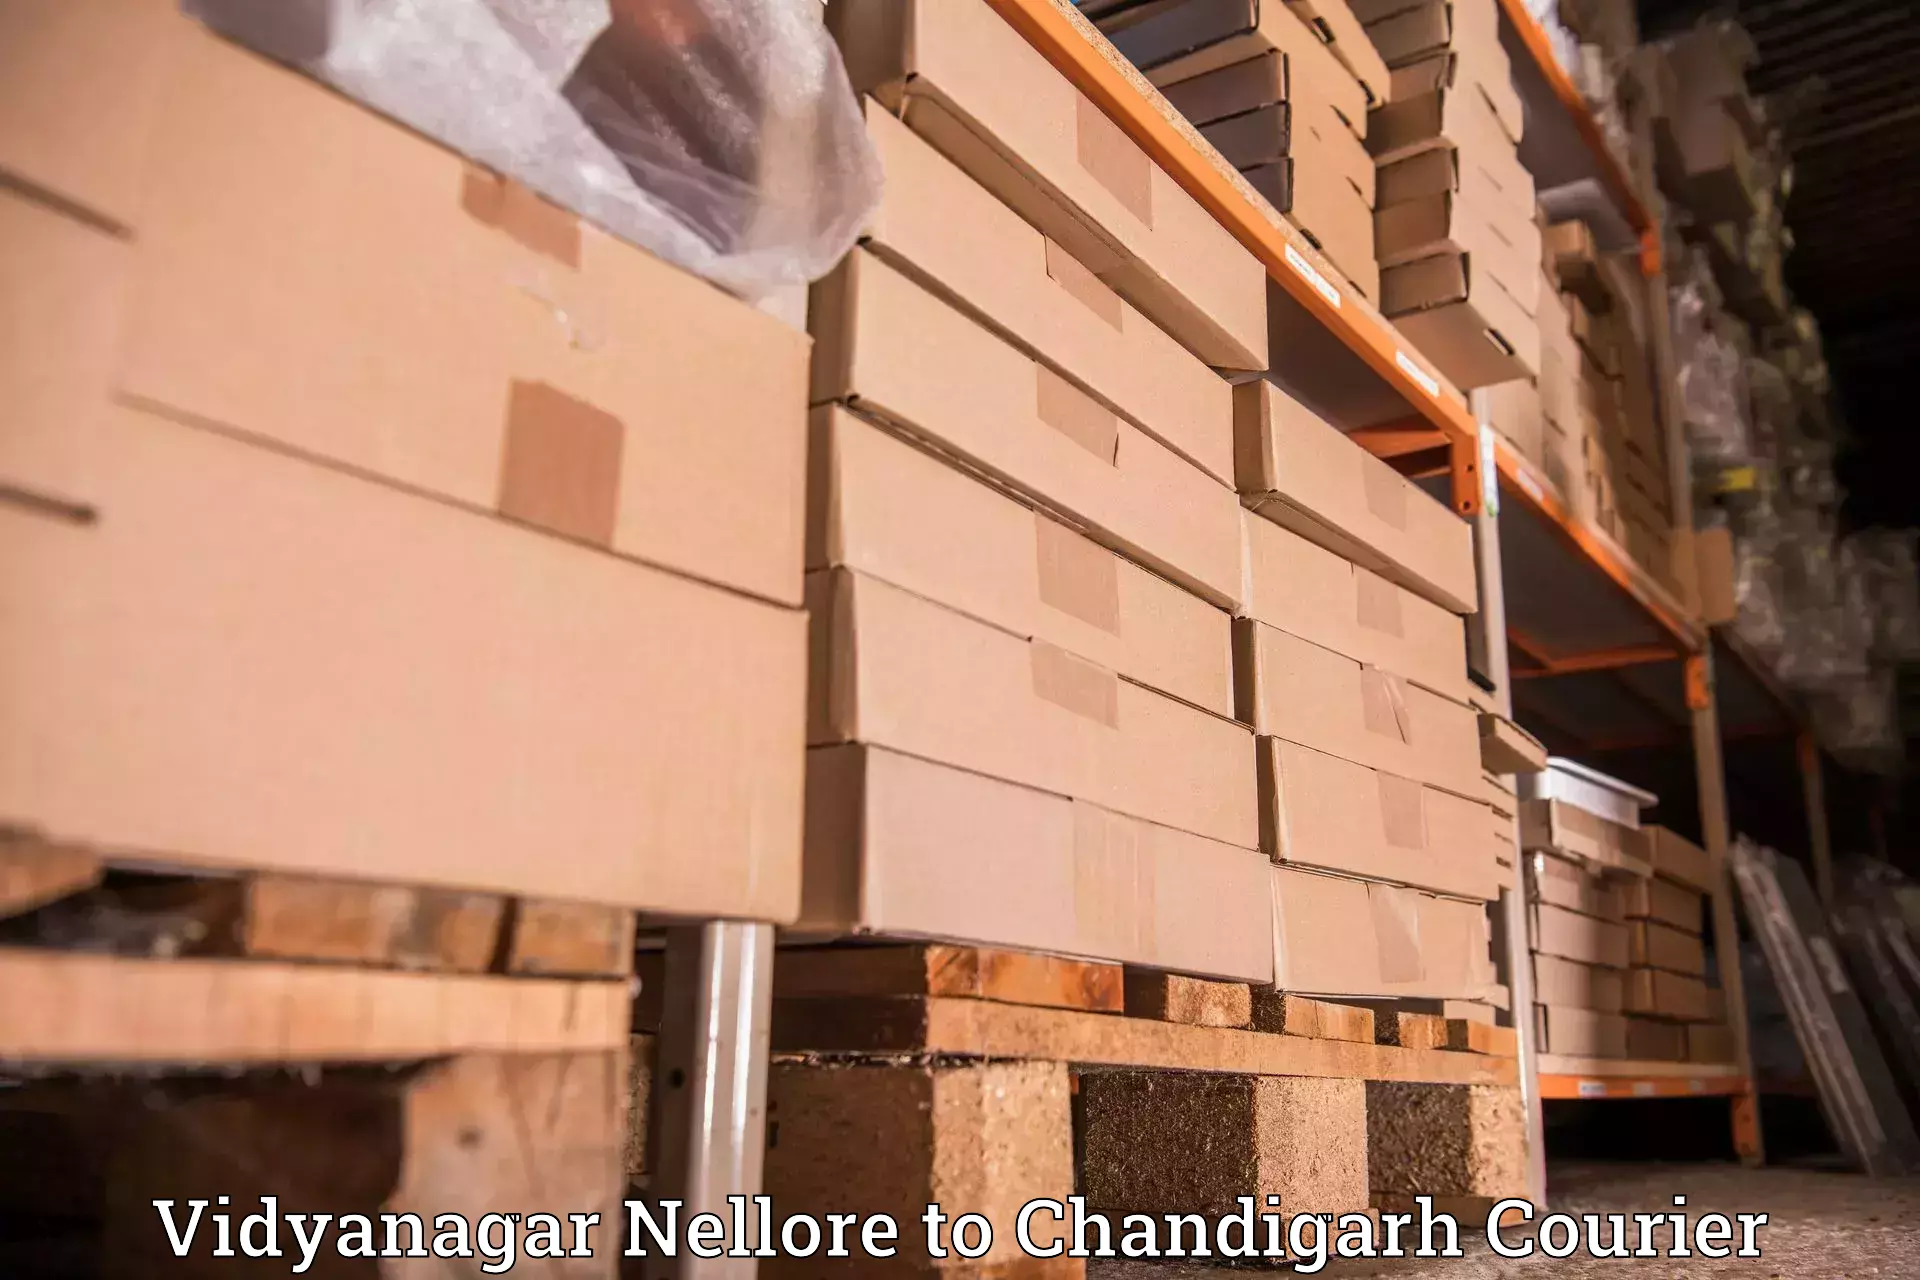 Special handling courier Vidyanagar Nellore to Chandigarh